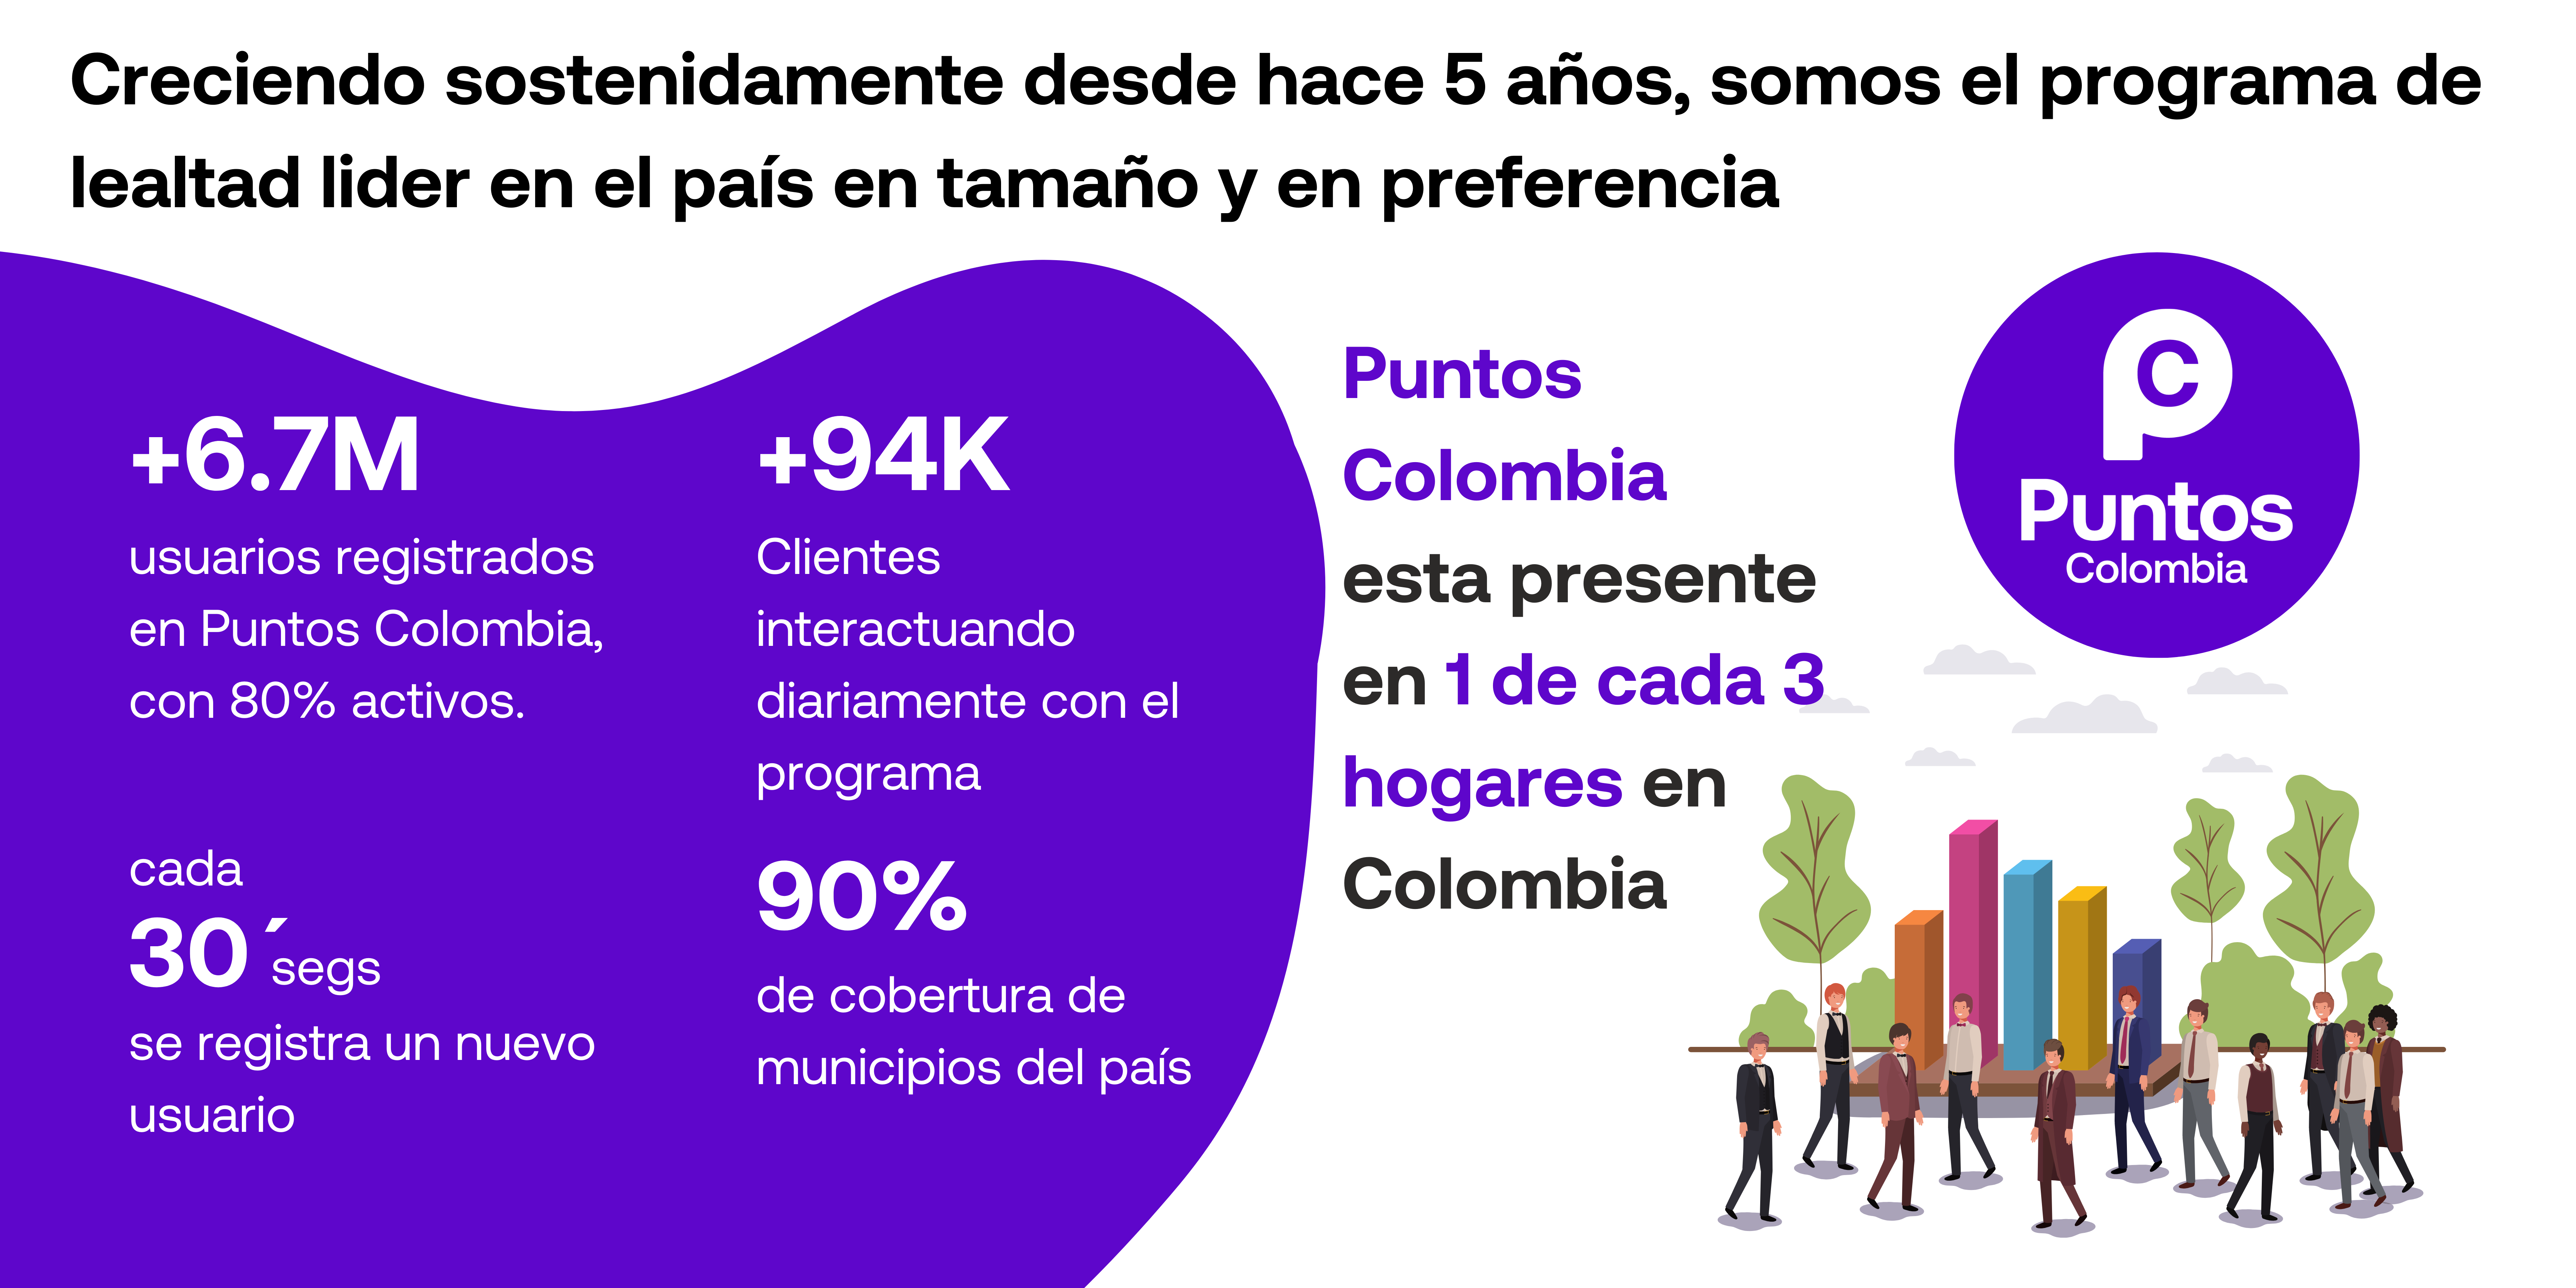 Somos el programa de Lealtad más grande de Colombia. (2)